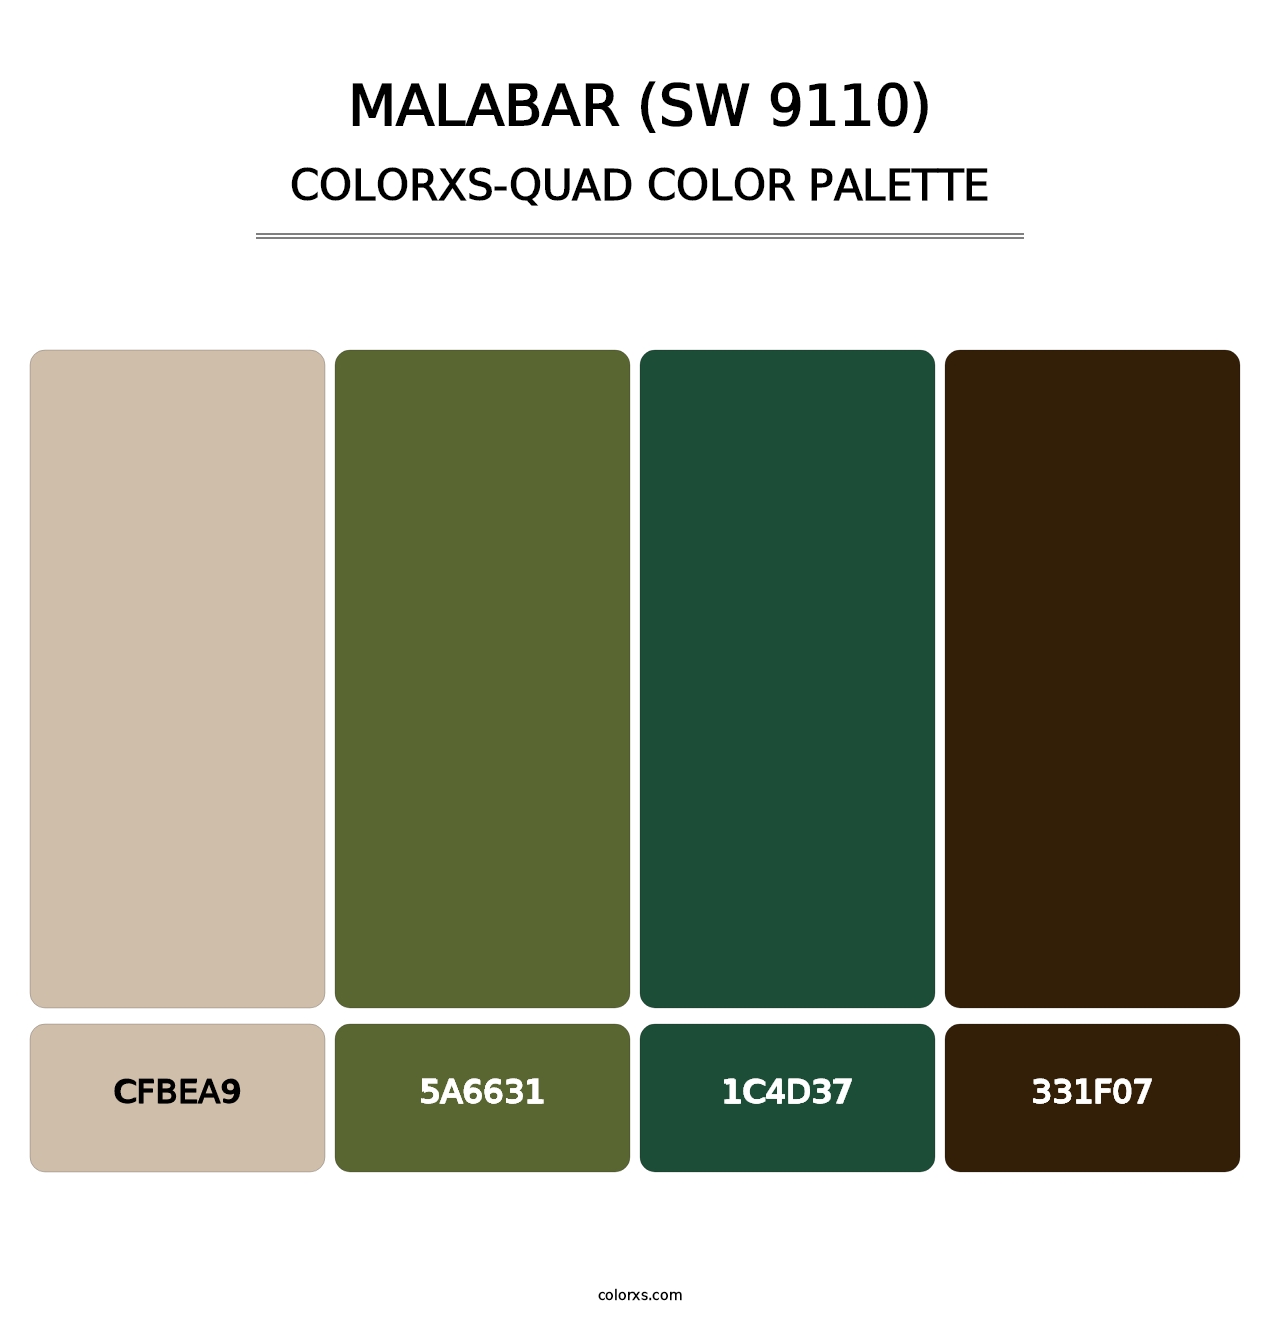 Malabar (SW 9110) - Colorxs Quad Palette